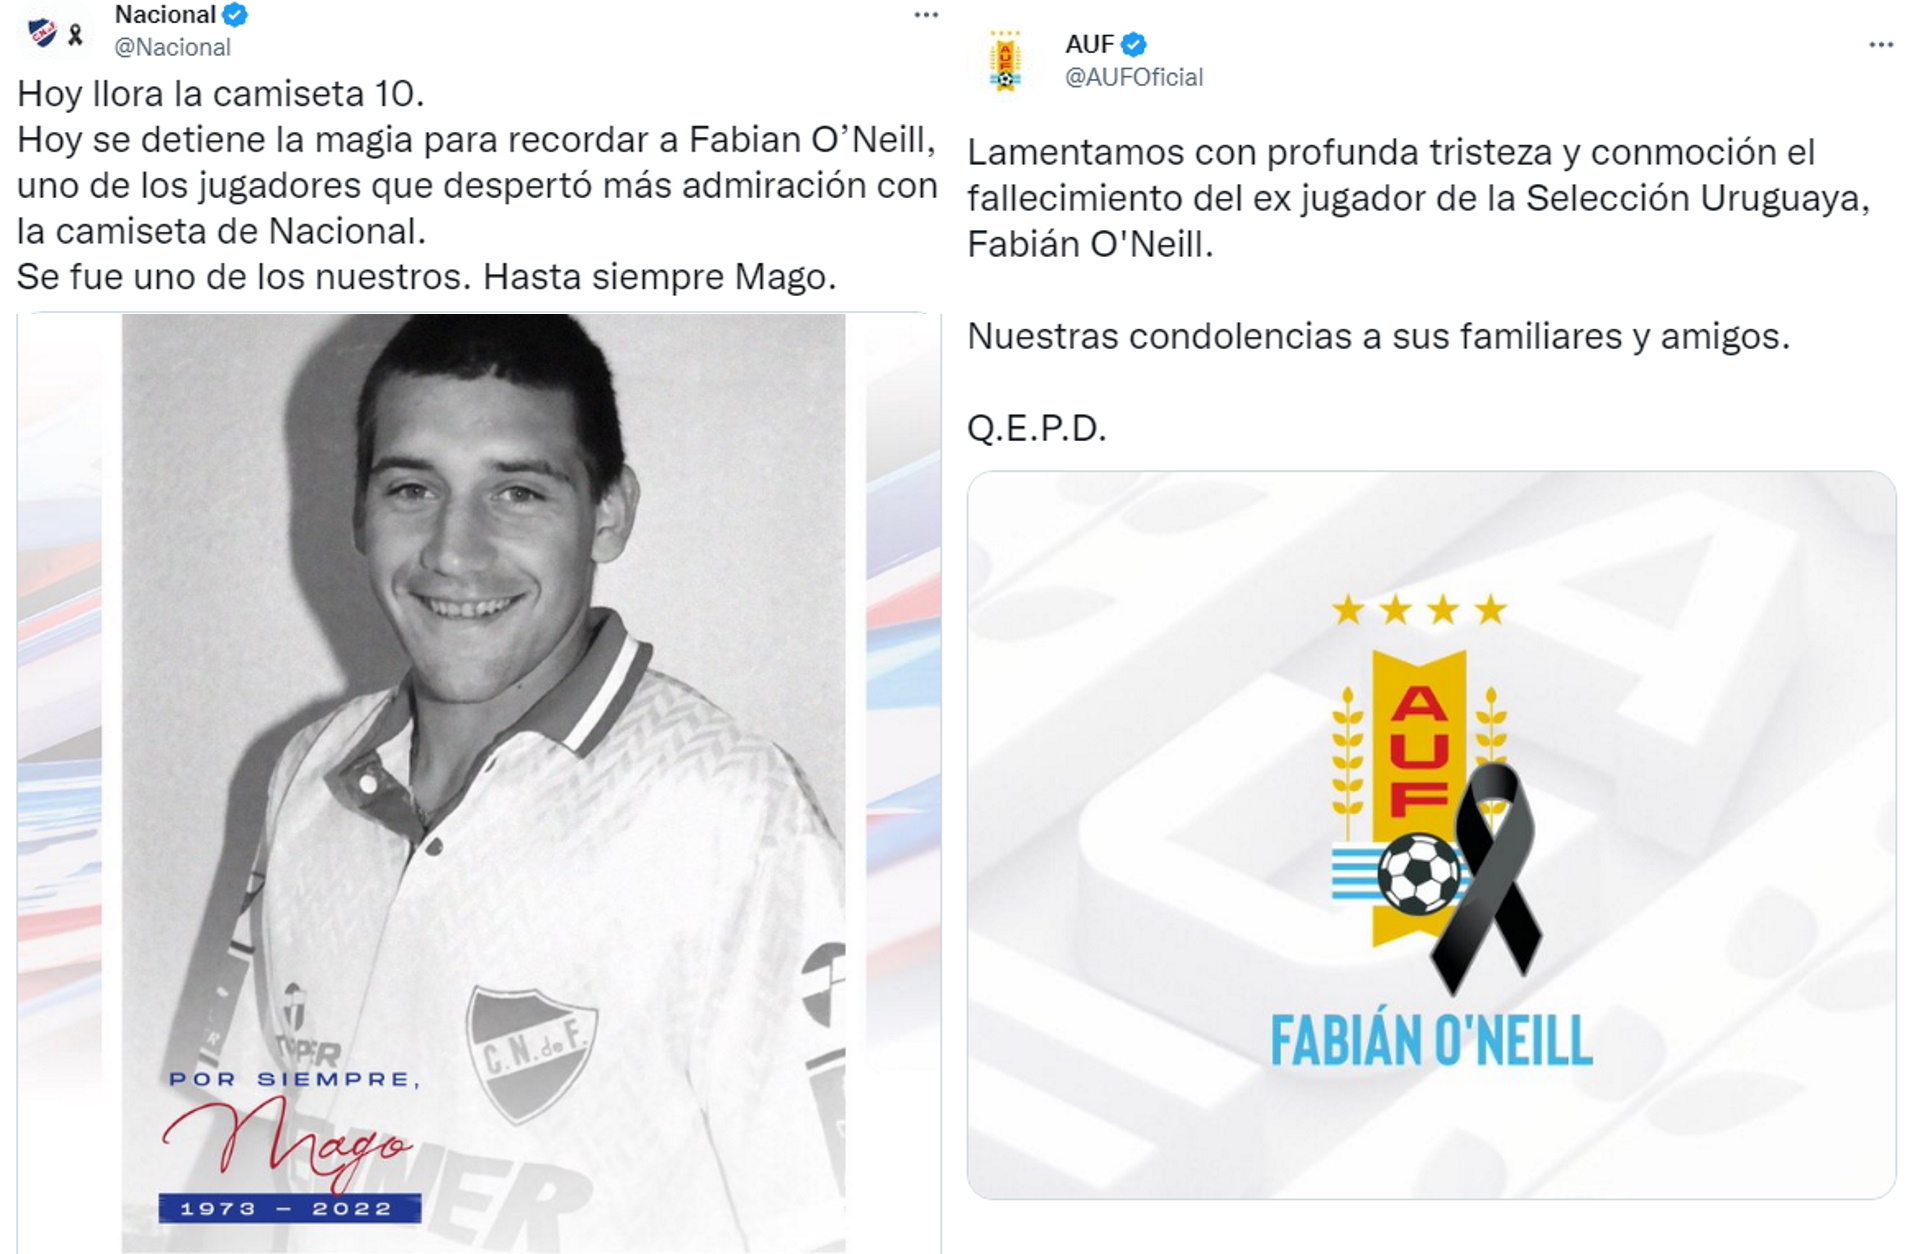 Las condolencias de Nacional y de la Asociación Uruguaya de Fútbol por la muerte de Fabián O’Neill